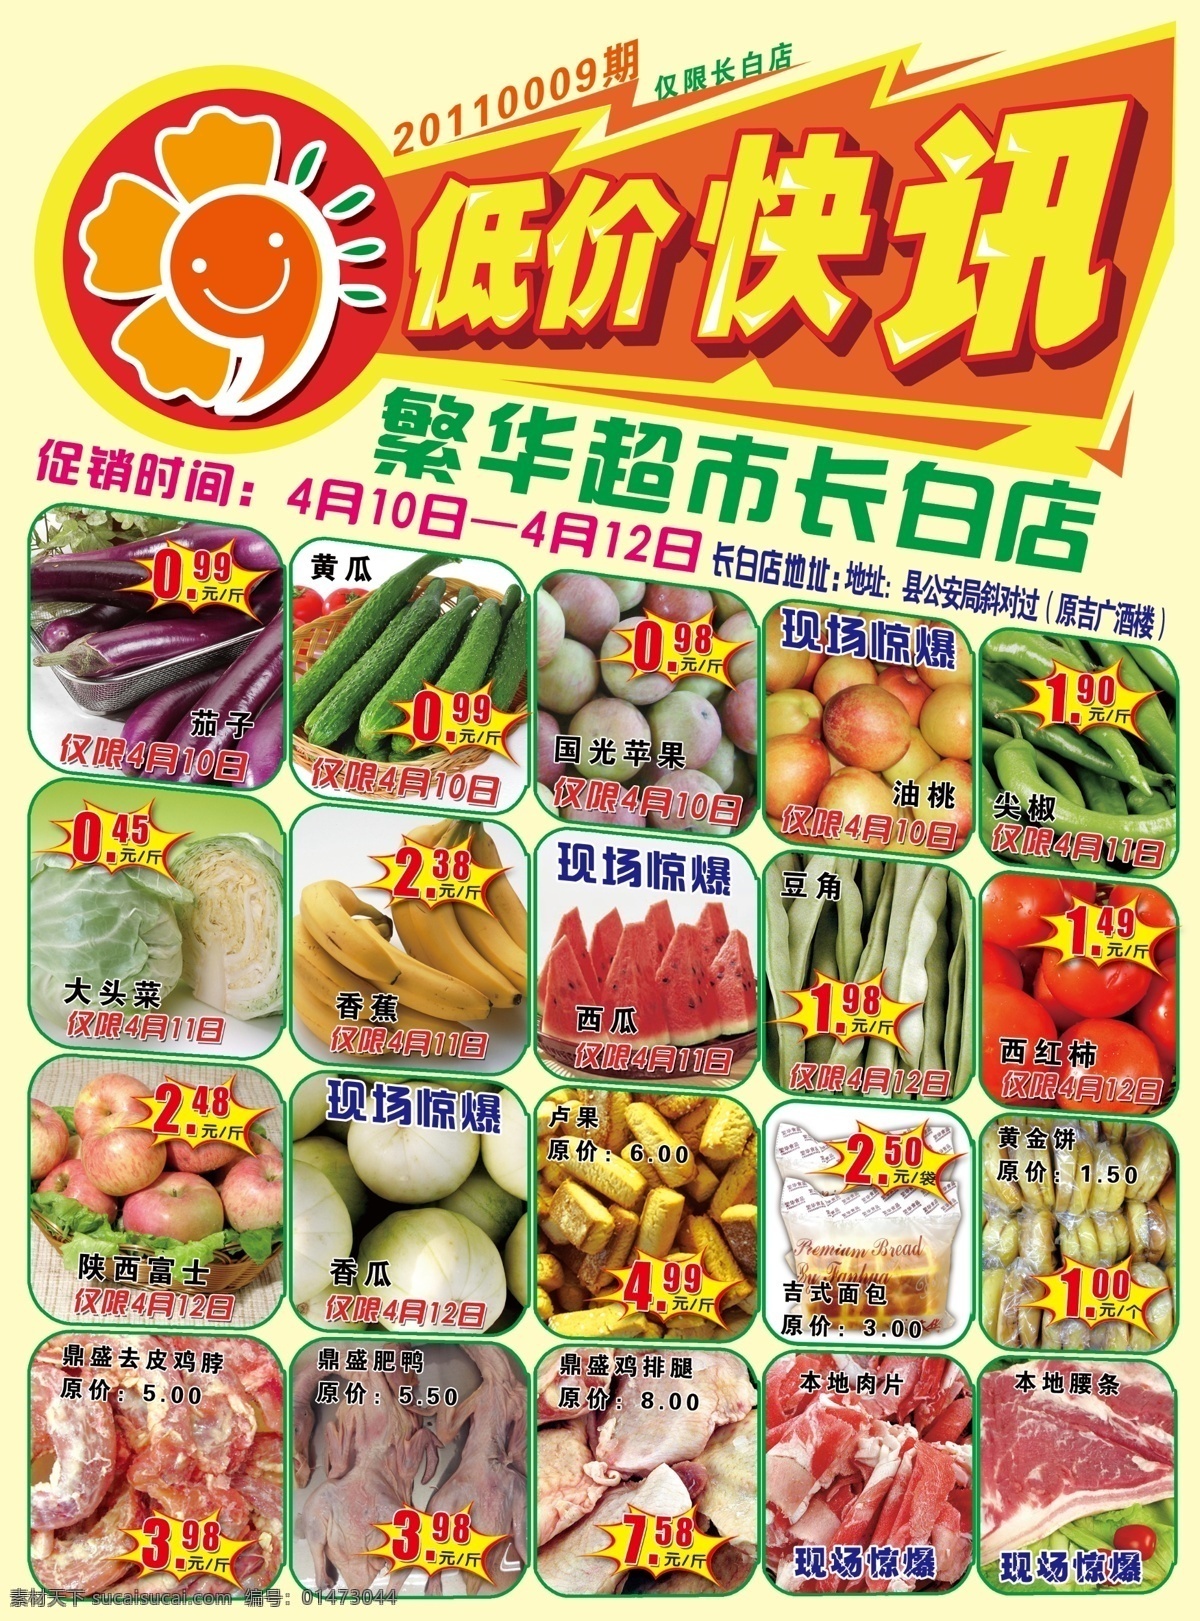 超市 低价 快讯 dm 会员 价格 惊爆低价 生鲜 食品 蔬菜 水果 特价 超市低价快讯 海报 非食 原创设计 原创海报